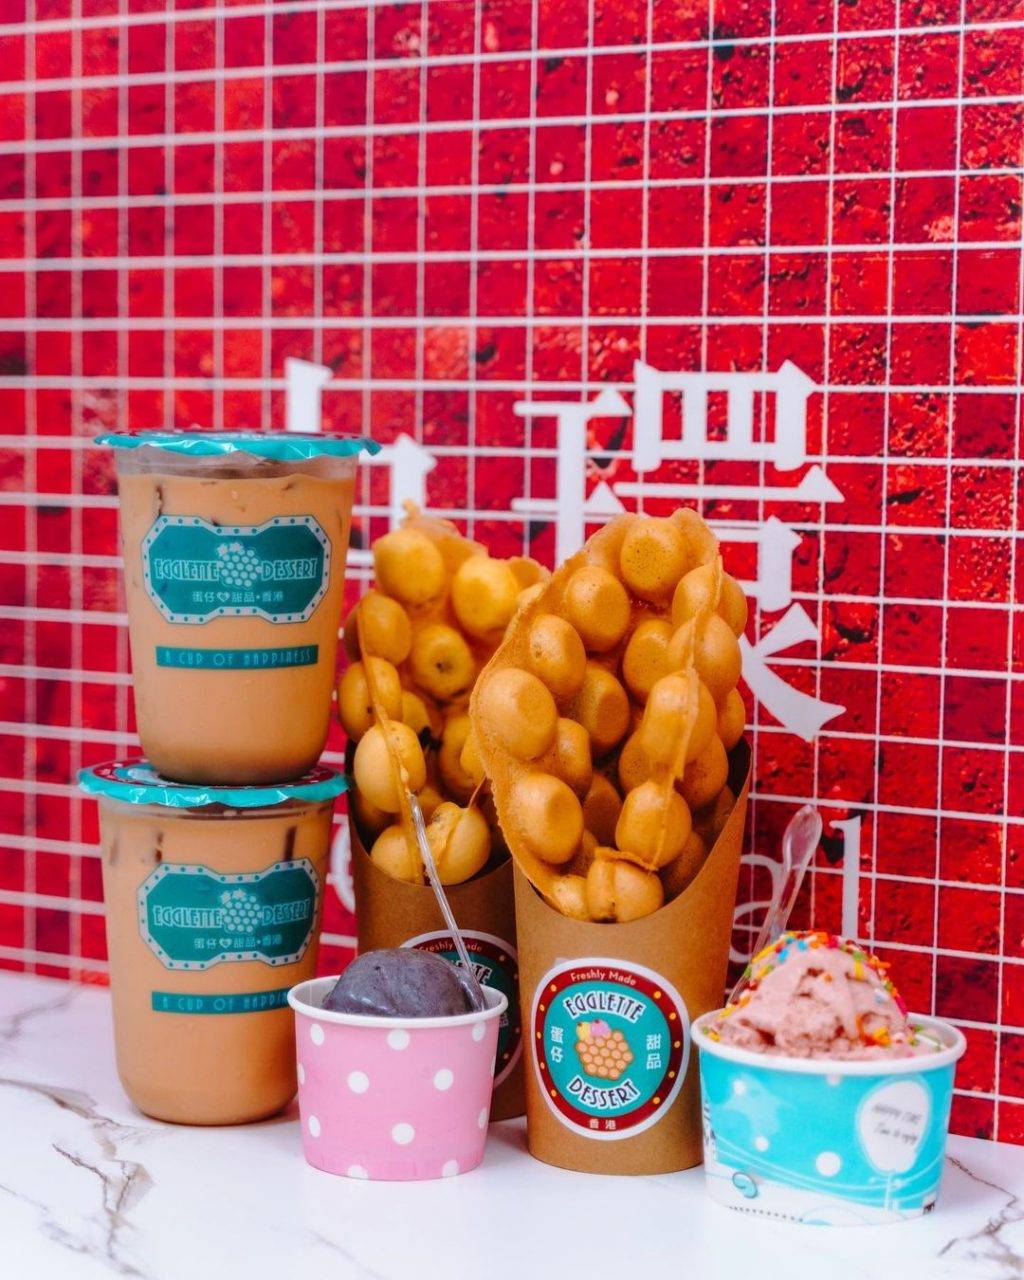 港風甜品店Egglette &amp; Dessert✨彩色瓷磚牆+酥脆雞蛋仔+經典糖水，吃完來拍複古大片📸